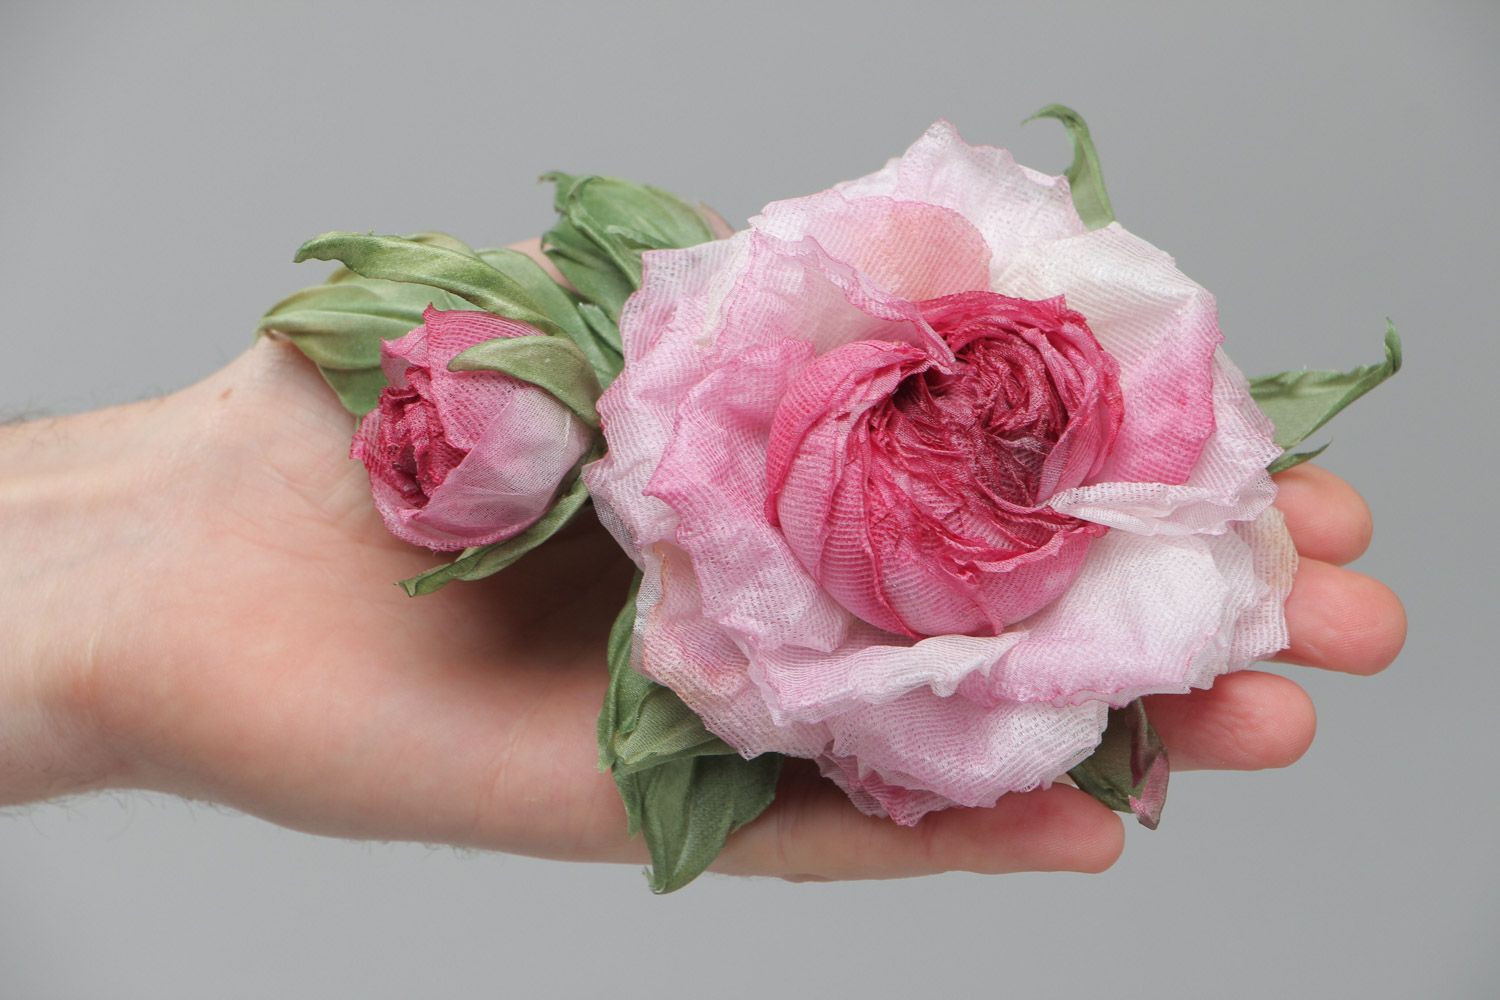 Брошь в виде розы крупная розовая нежная красивая стильная изящная ручной работы фото 5